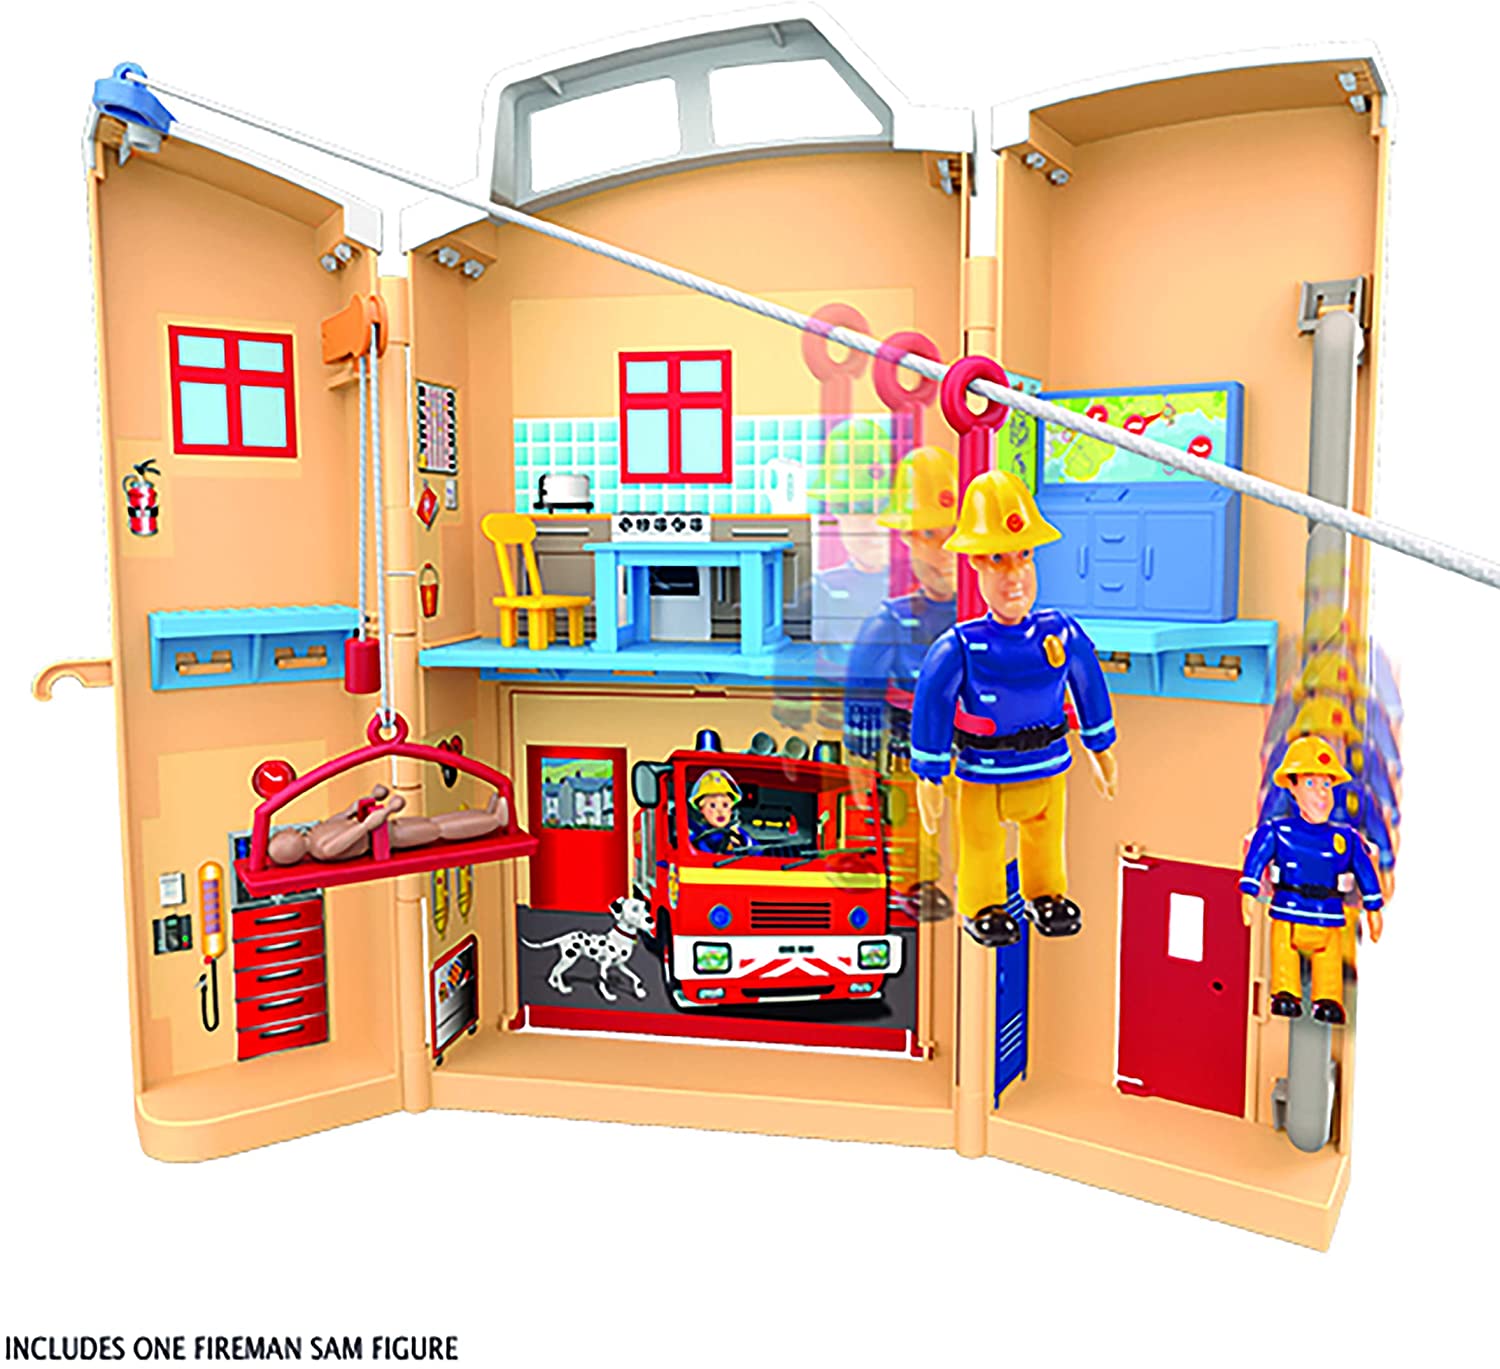 Fireman Sam Rescue Centre